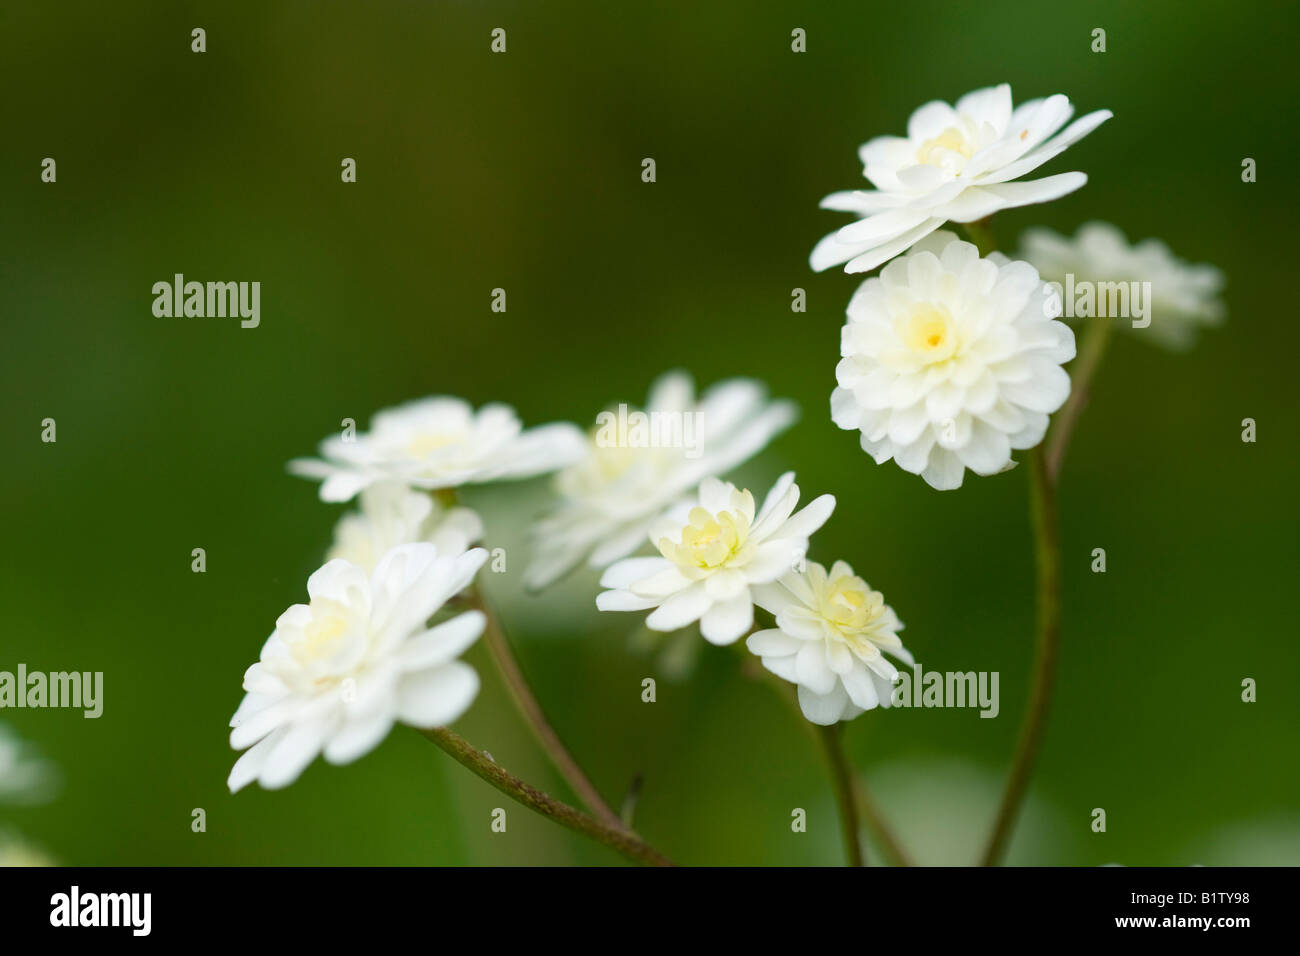 Ranunculus aconitifolius 'Flore pleno' Stock Photo